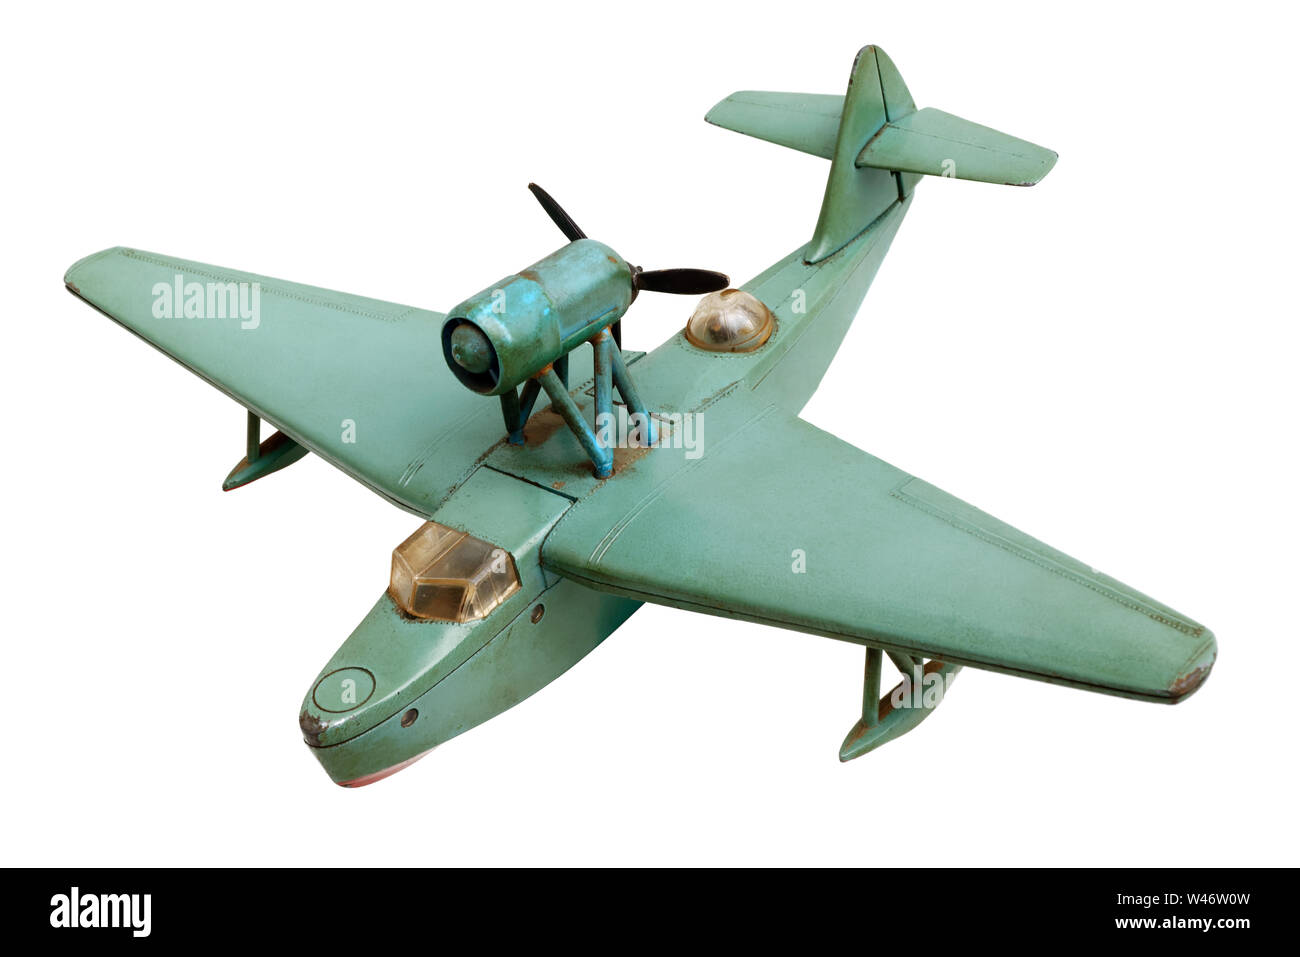 Oggetti isolati: vecchio generico idro aereo metallo verde modello in scala, isolati su sfondo bianco Foto Stock